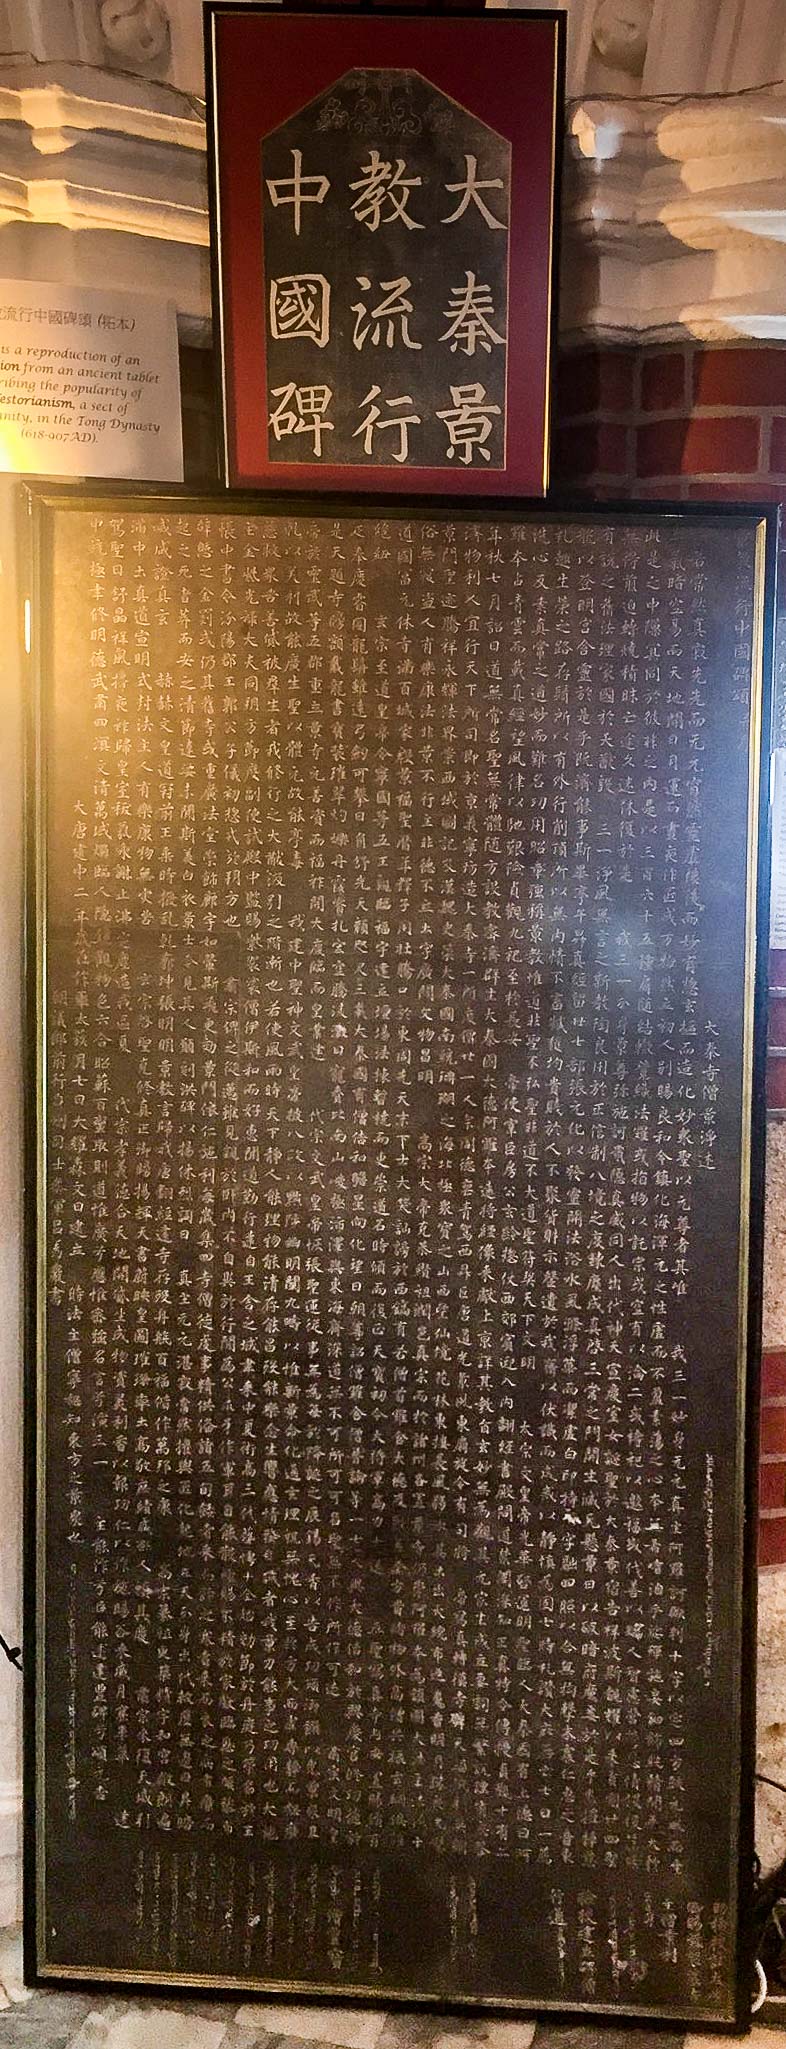 《大秦景教流行中國碑》複製品，筆者攝於香港2017年「感動之旅」(the INSPIRED Exhibit)聖經展。